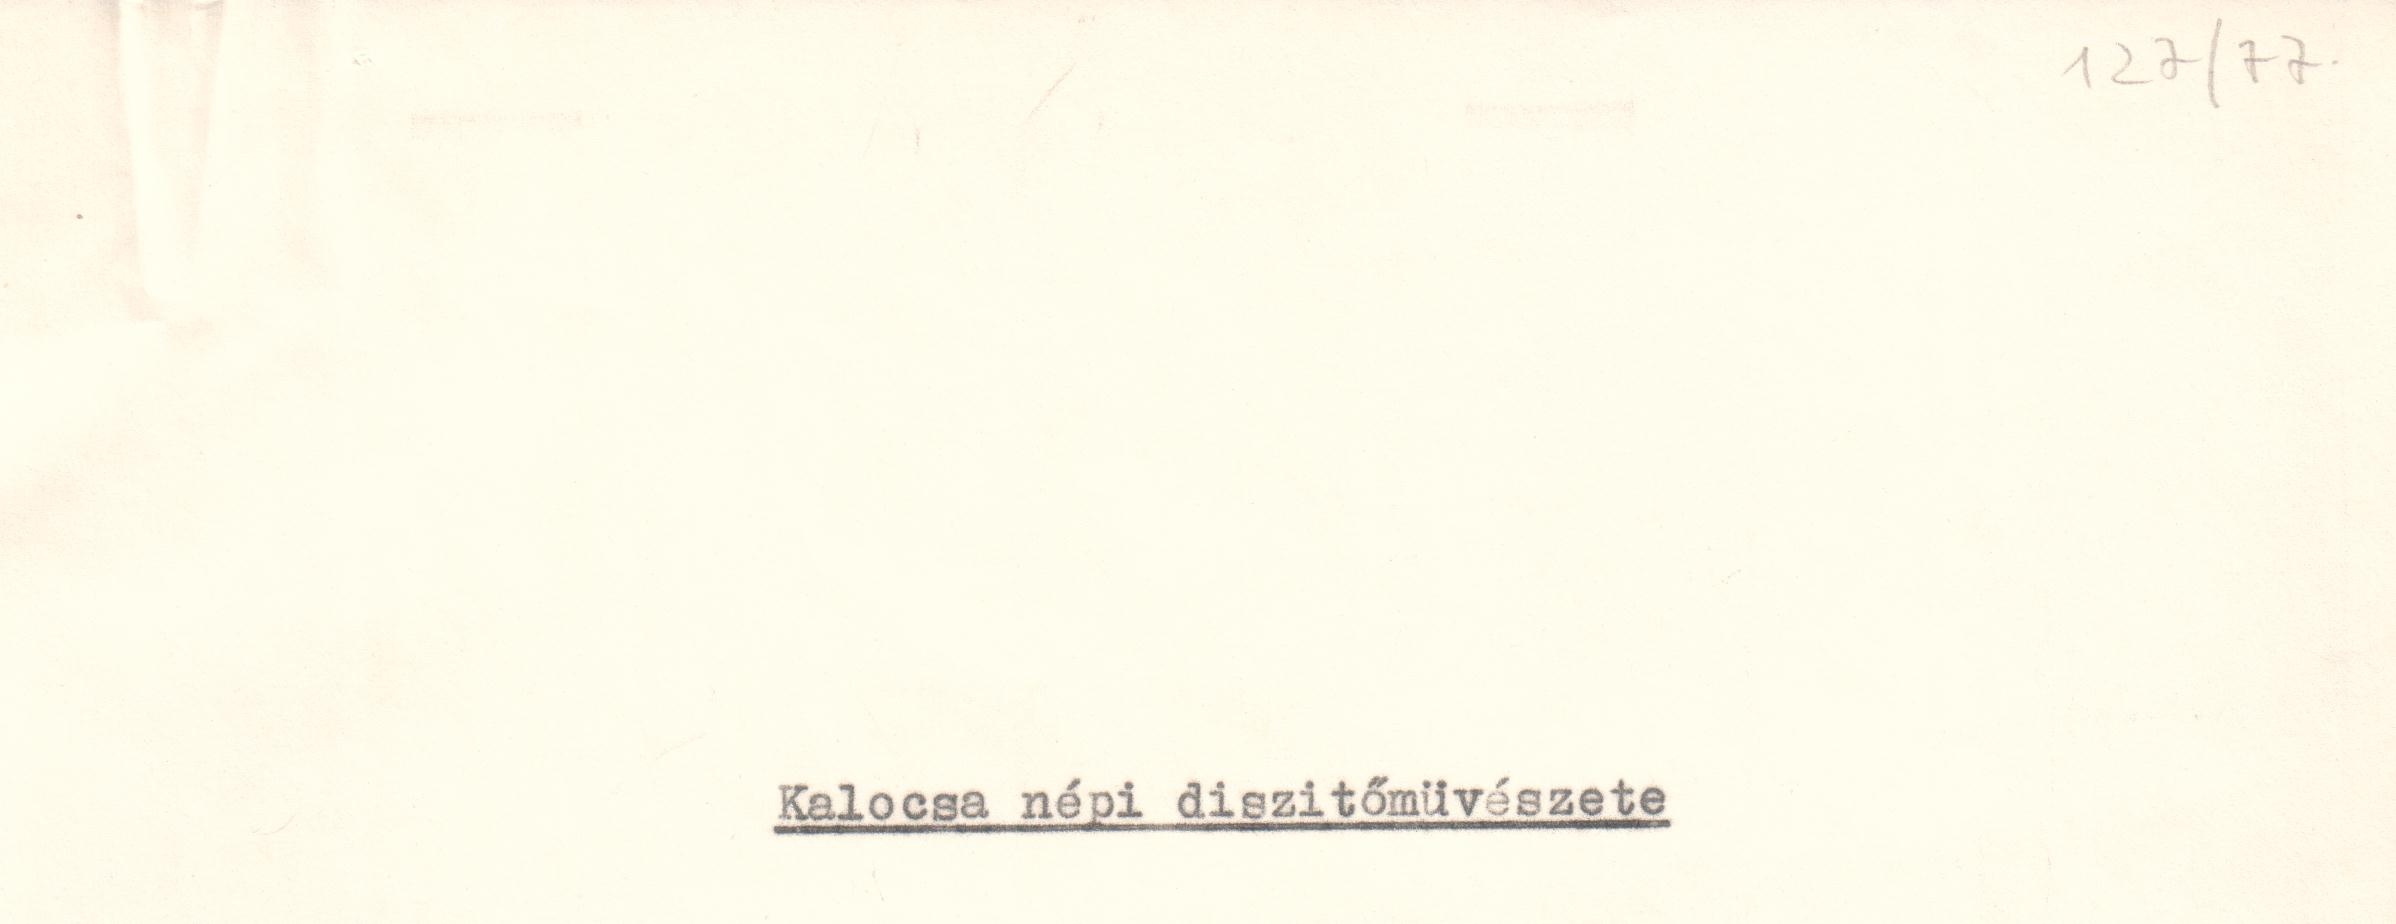 Kalocsa népi díszítőművészete c. tanulmány szövege. Készült a salgótarjáni kiállítás katalógusa számára. (Viski Károly Múzeum Kalocsa RR-F)